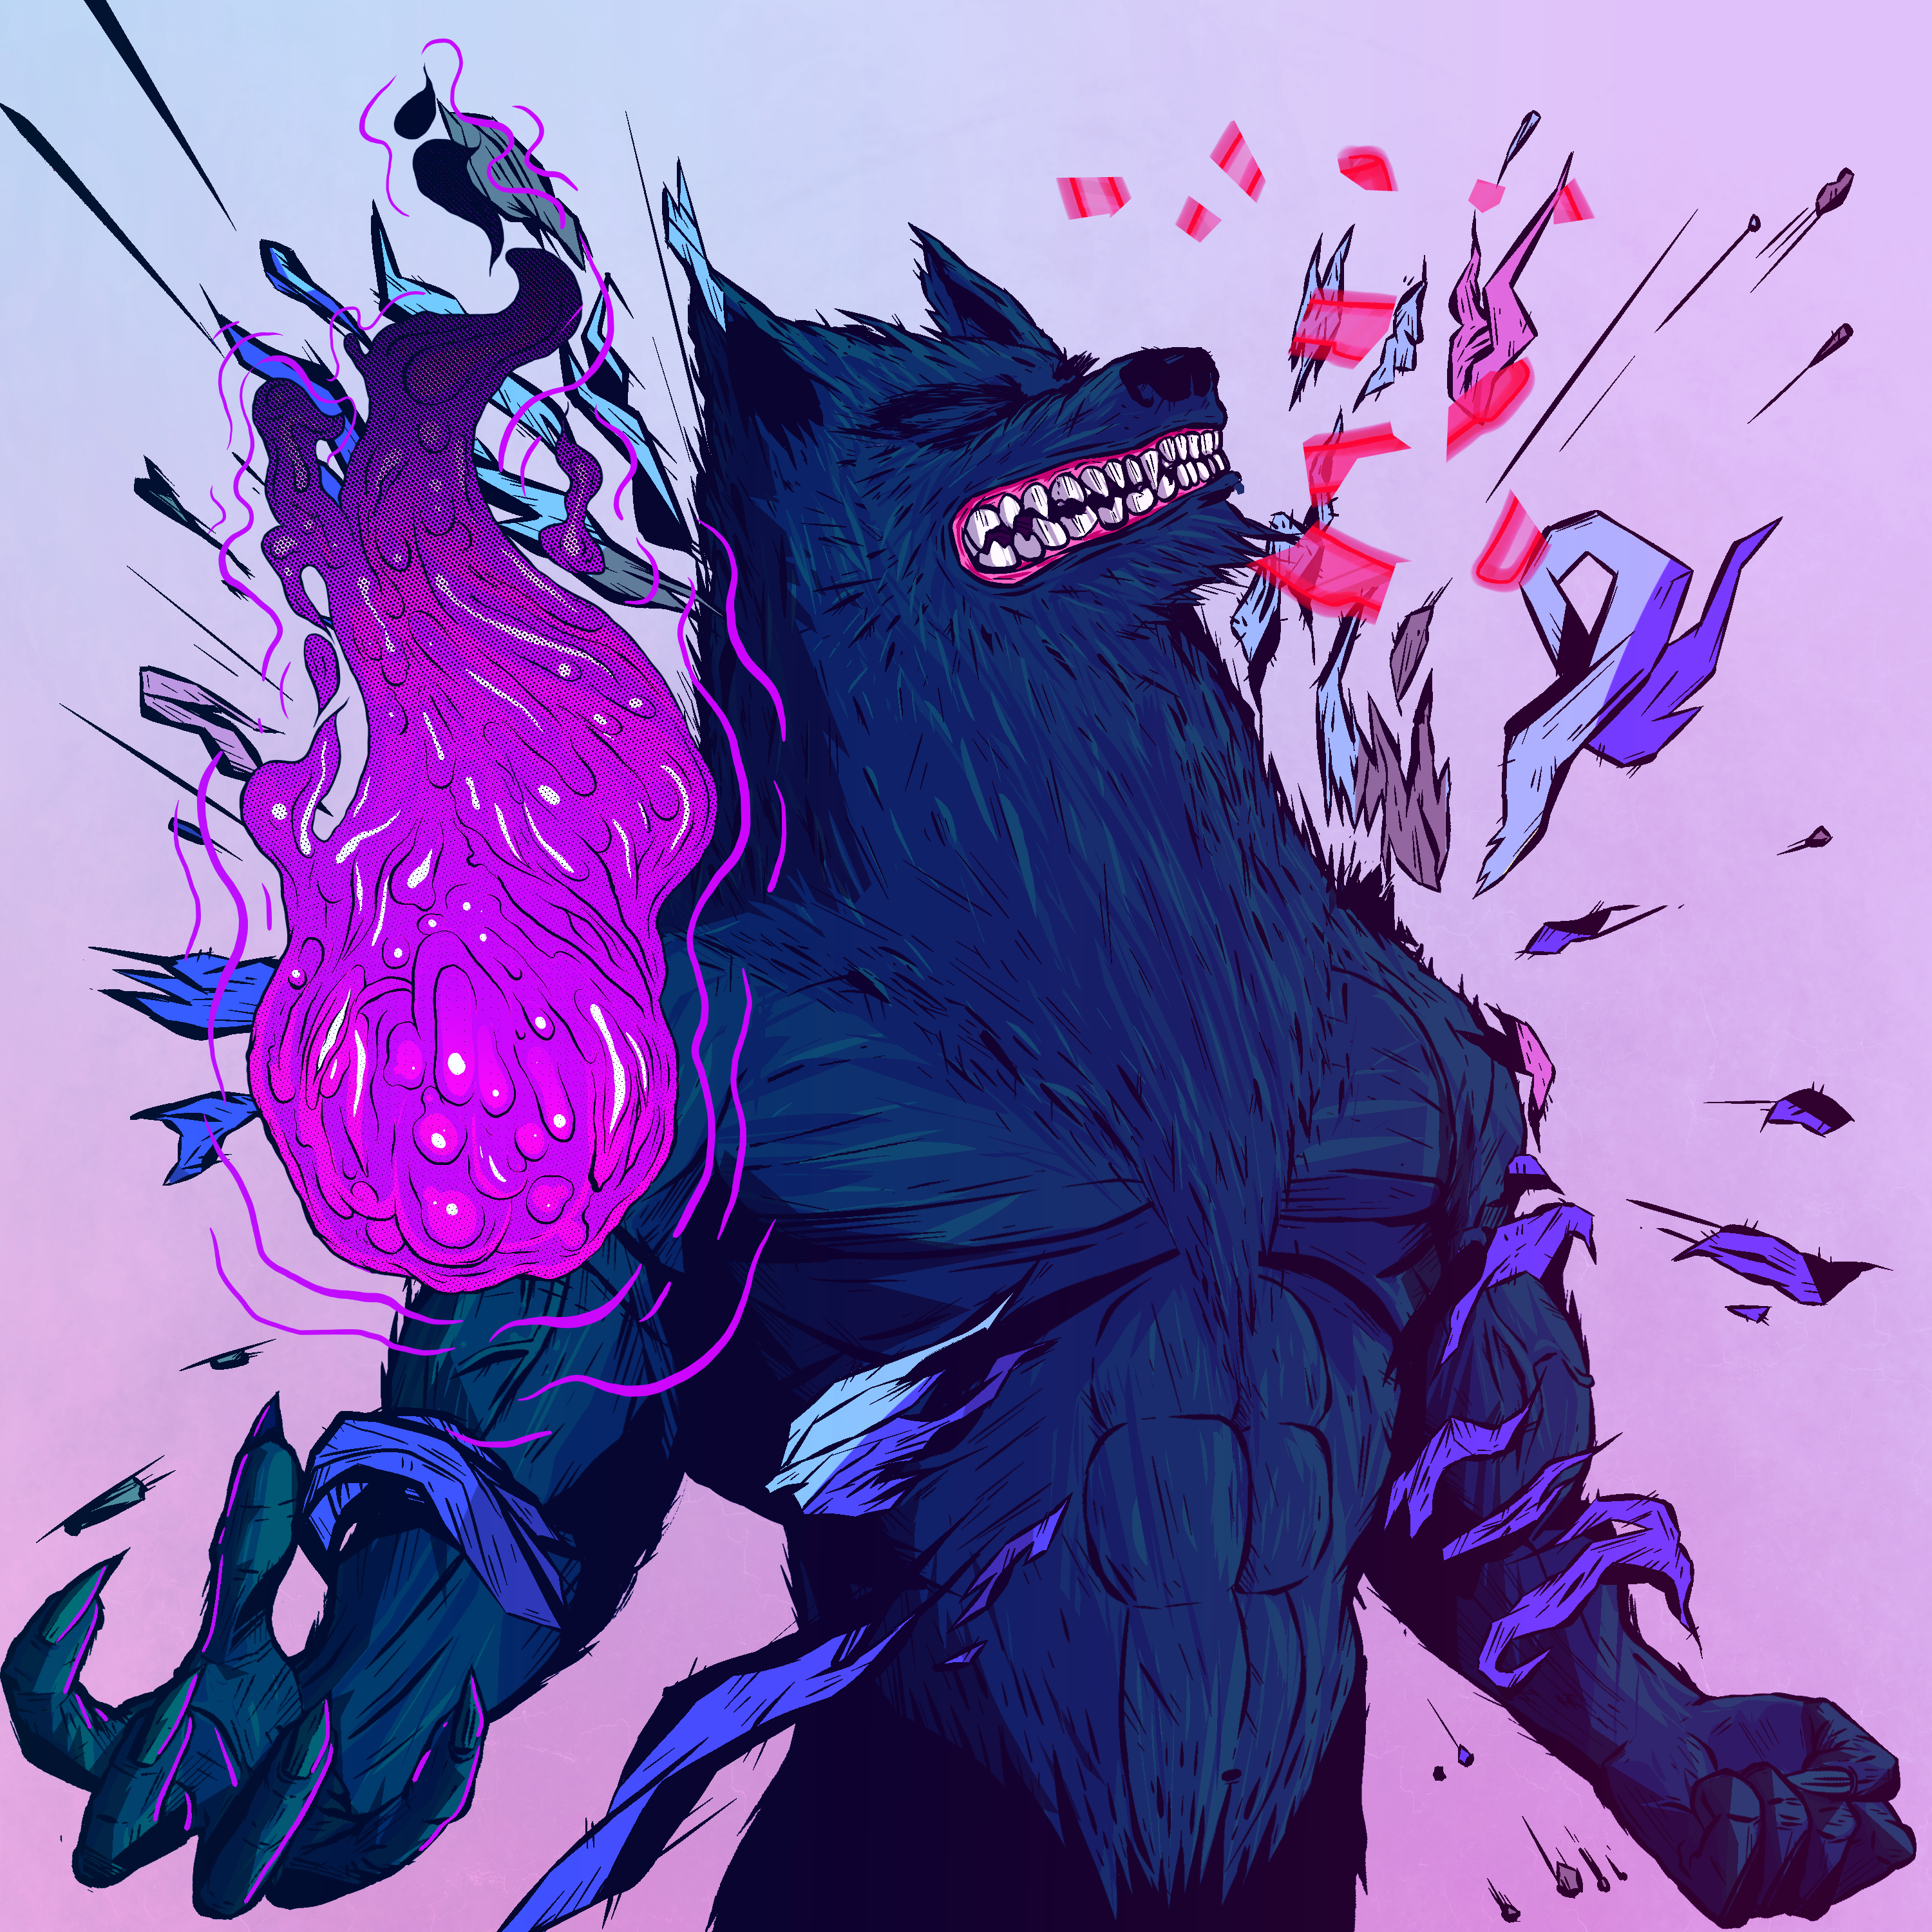 Werewolf #4571 asset